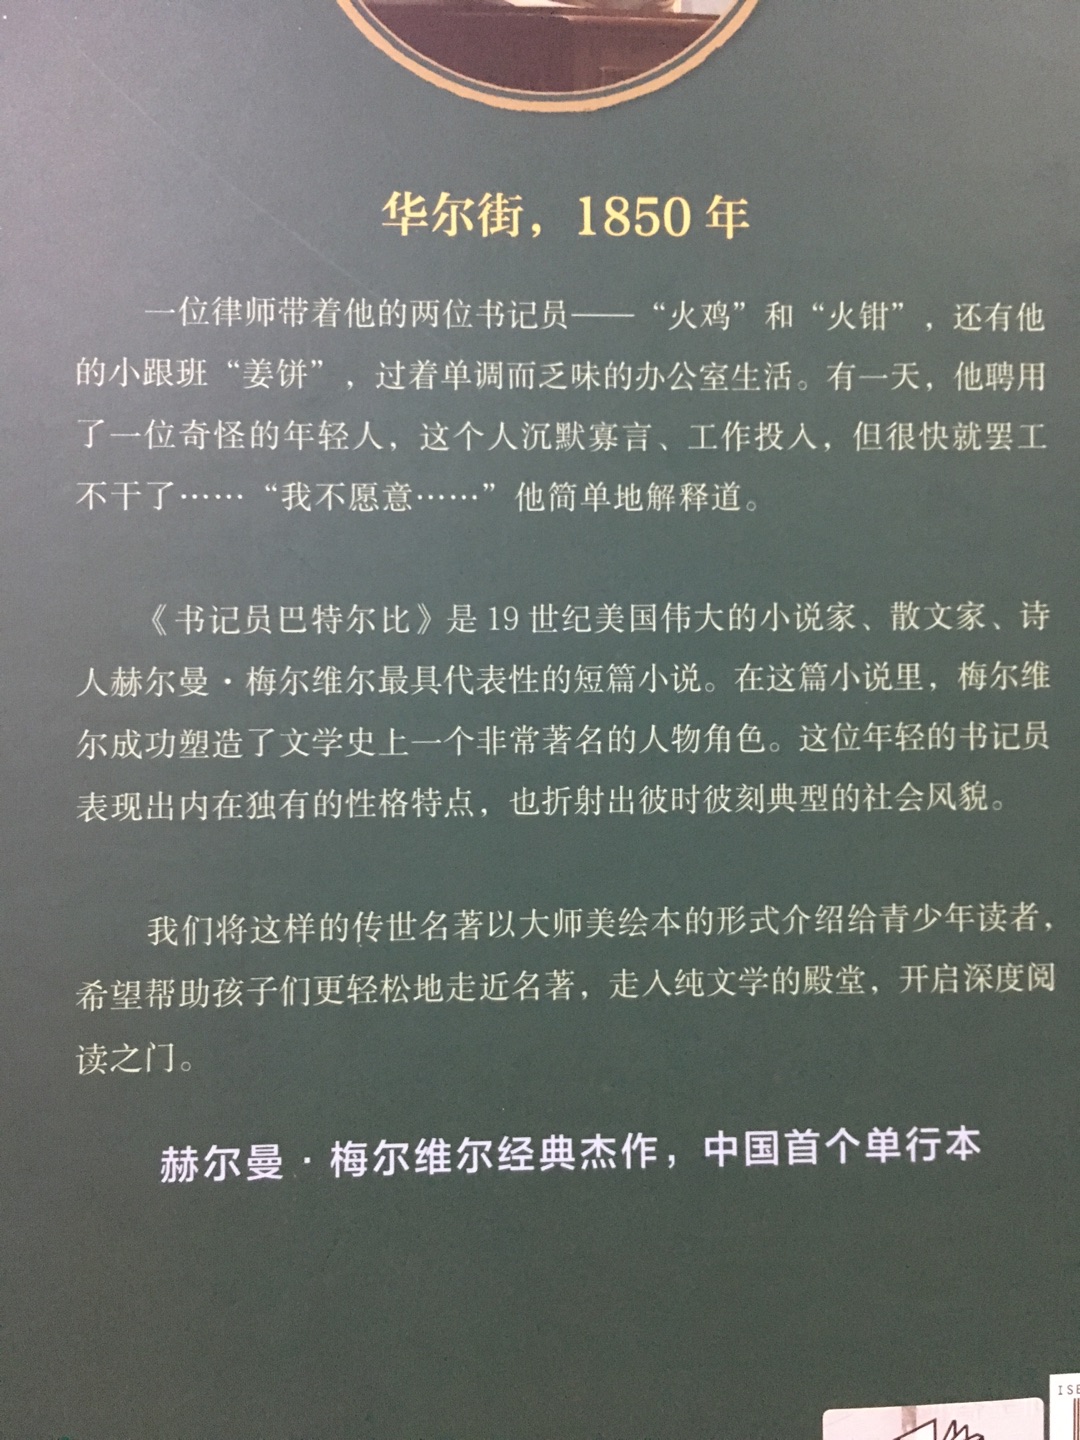 不适合一年级学生，我自己先通读一遍，中国首个单行本，必须收入囊中。